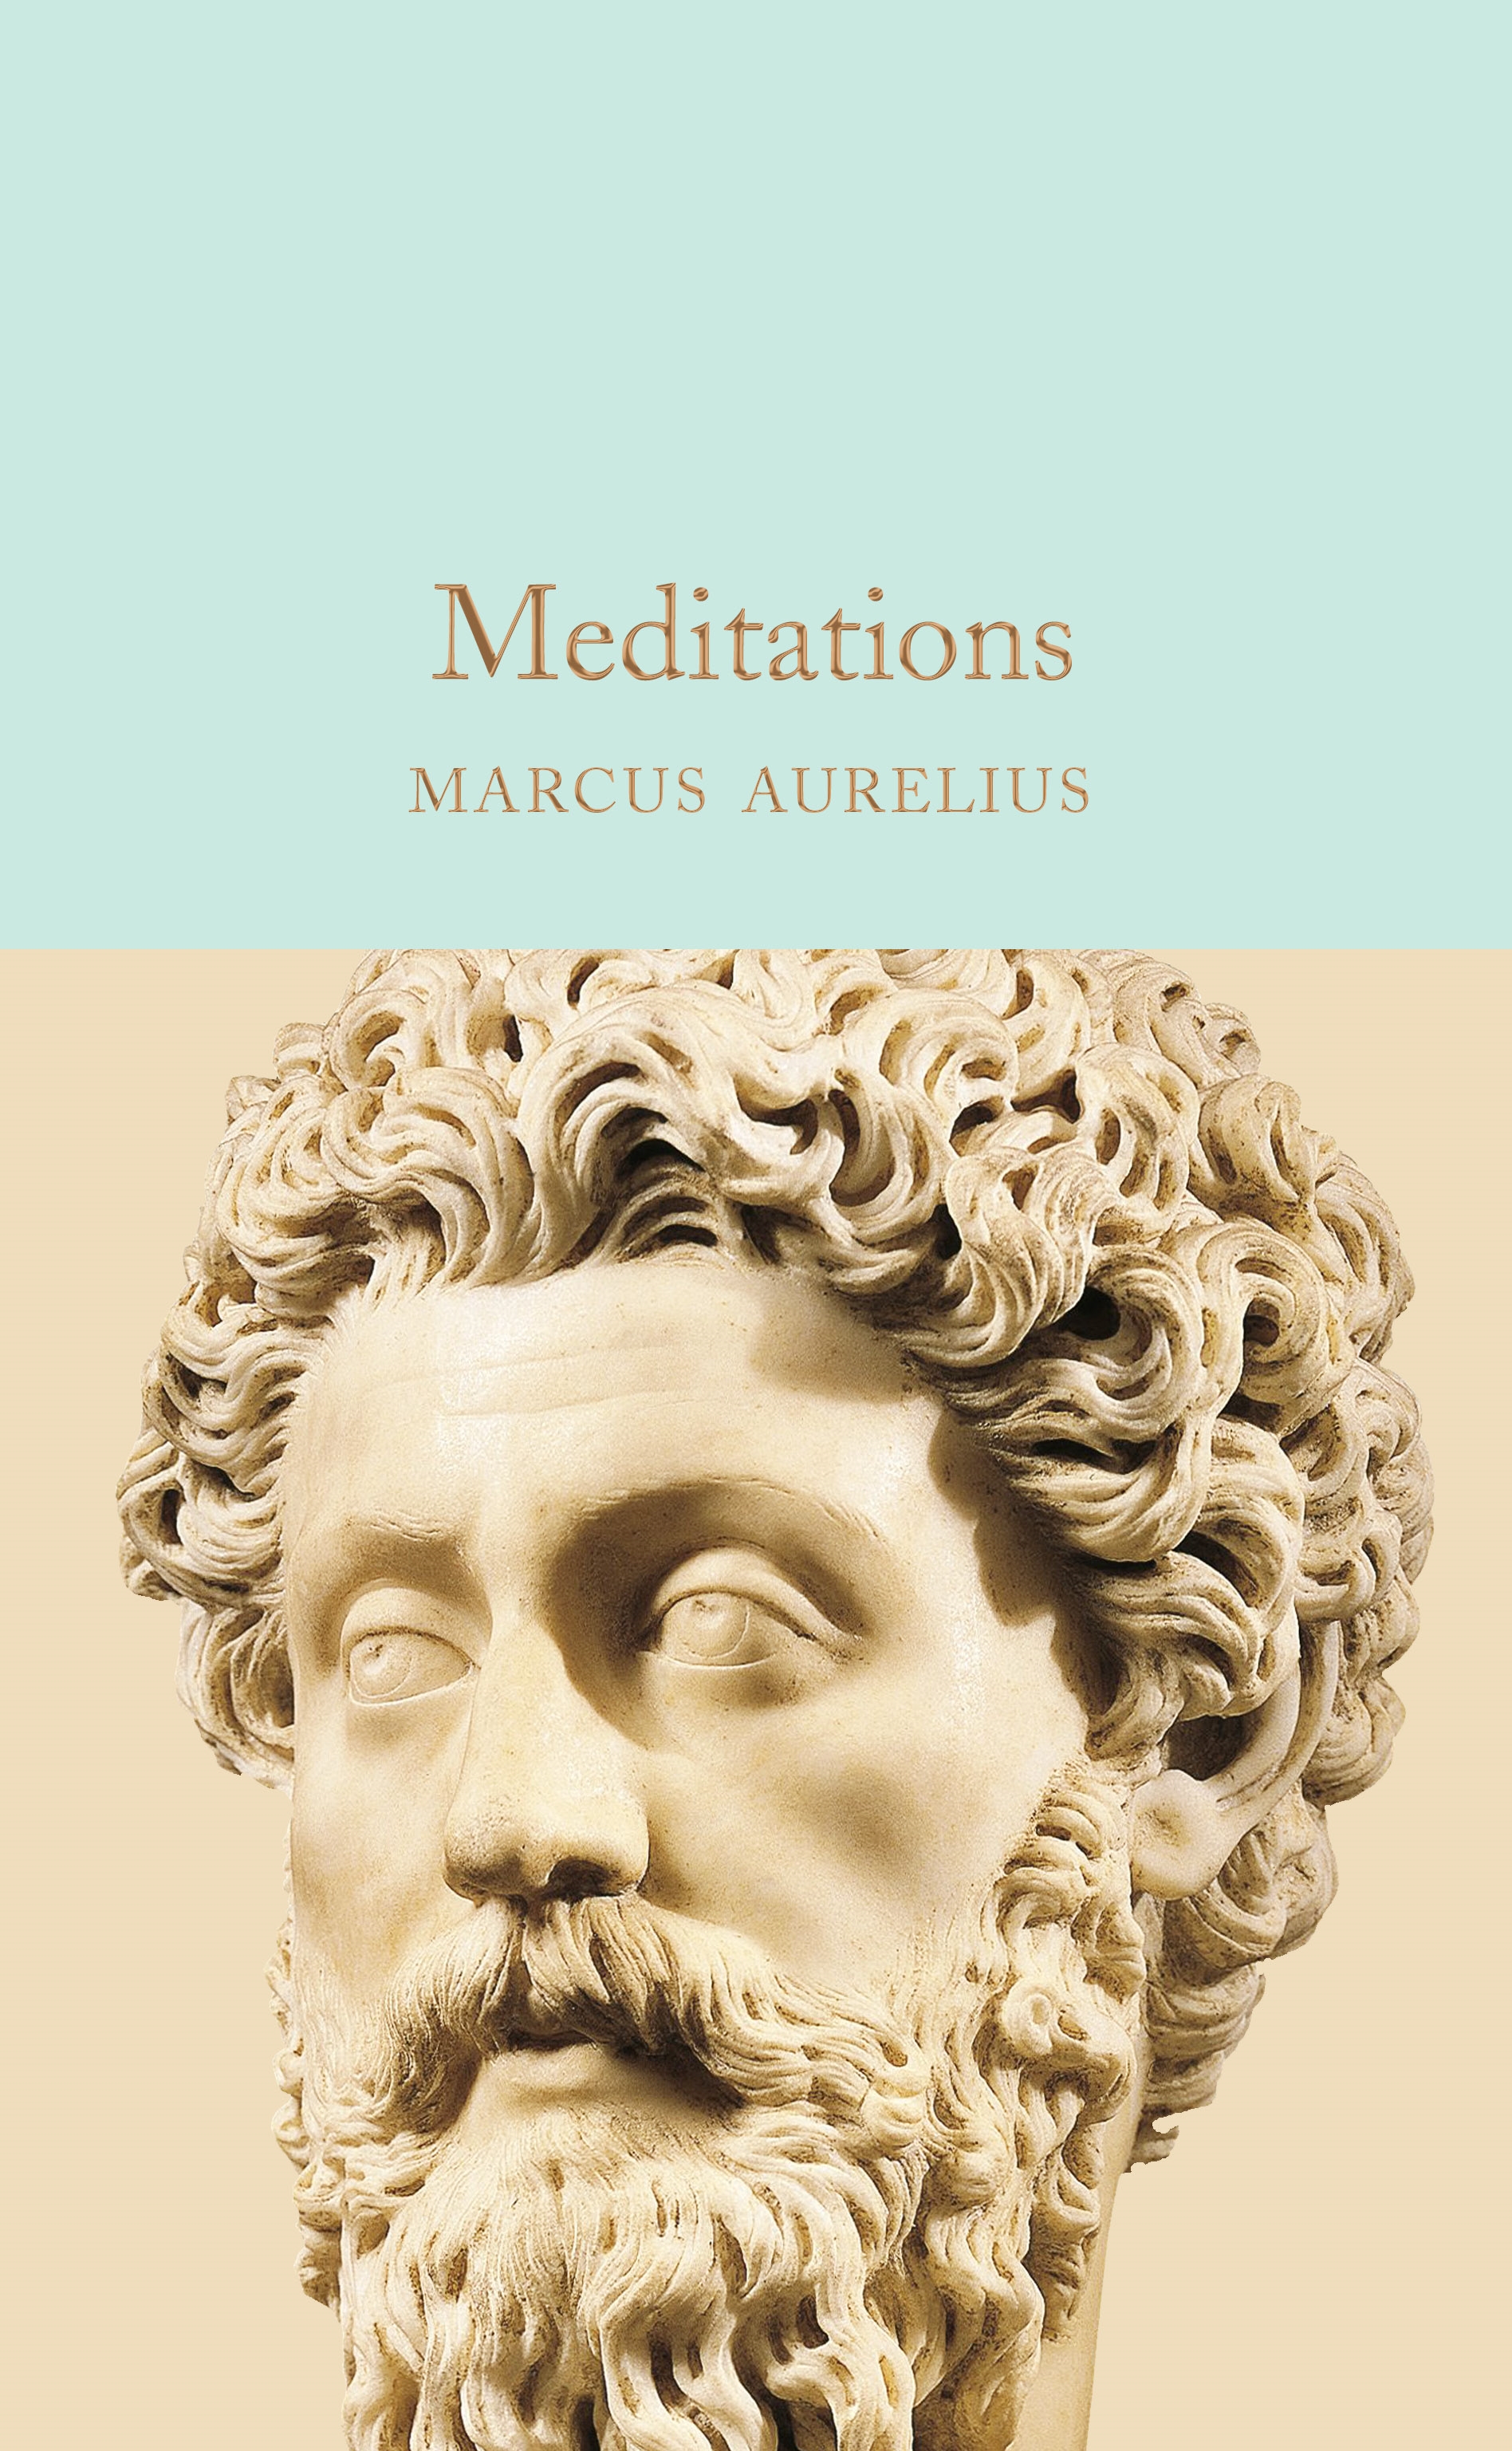 Book “Meditations” by Marcus Aurelius — April 7, 2020